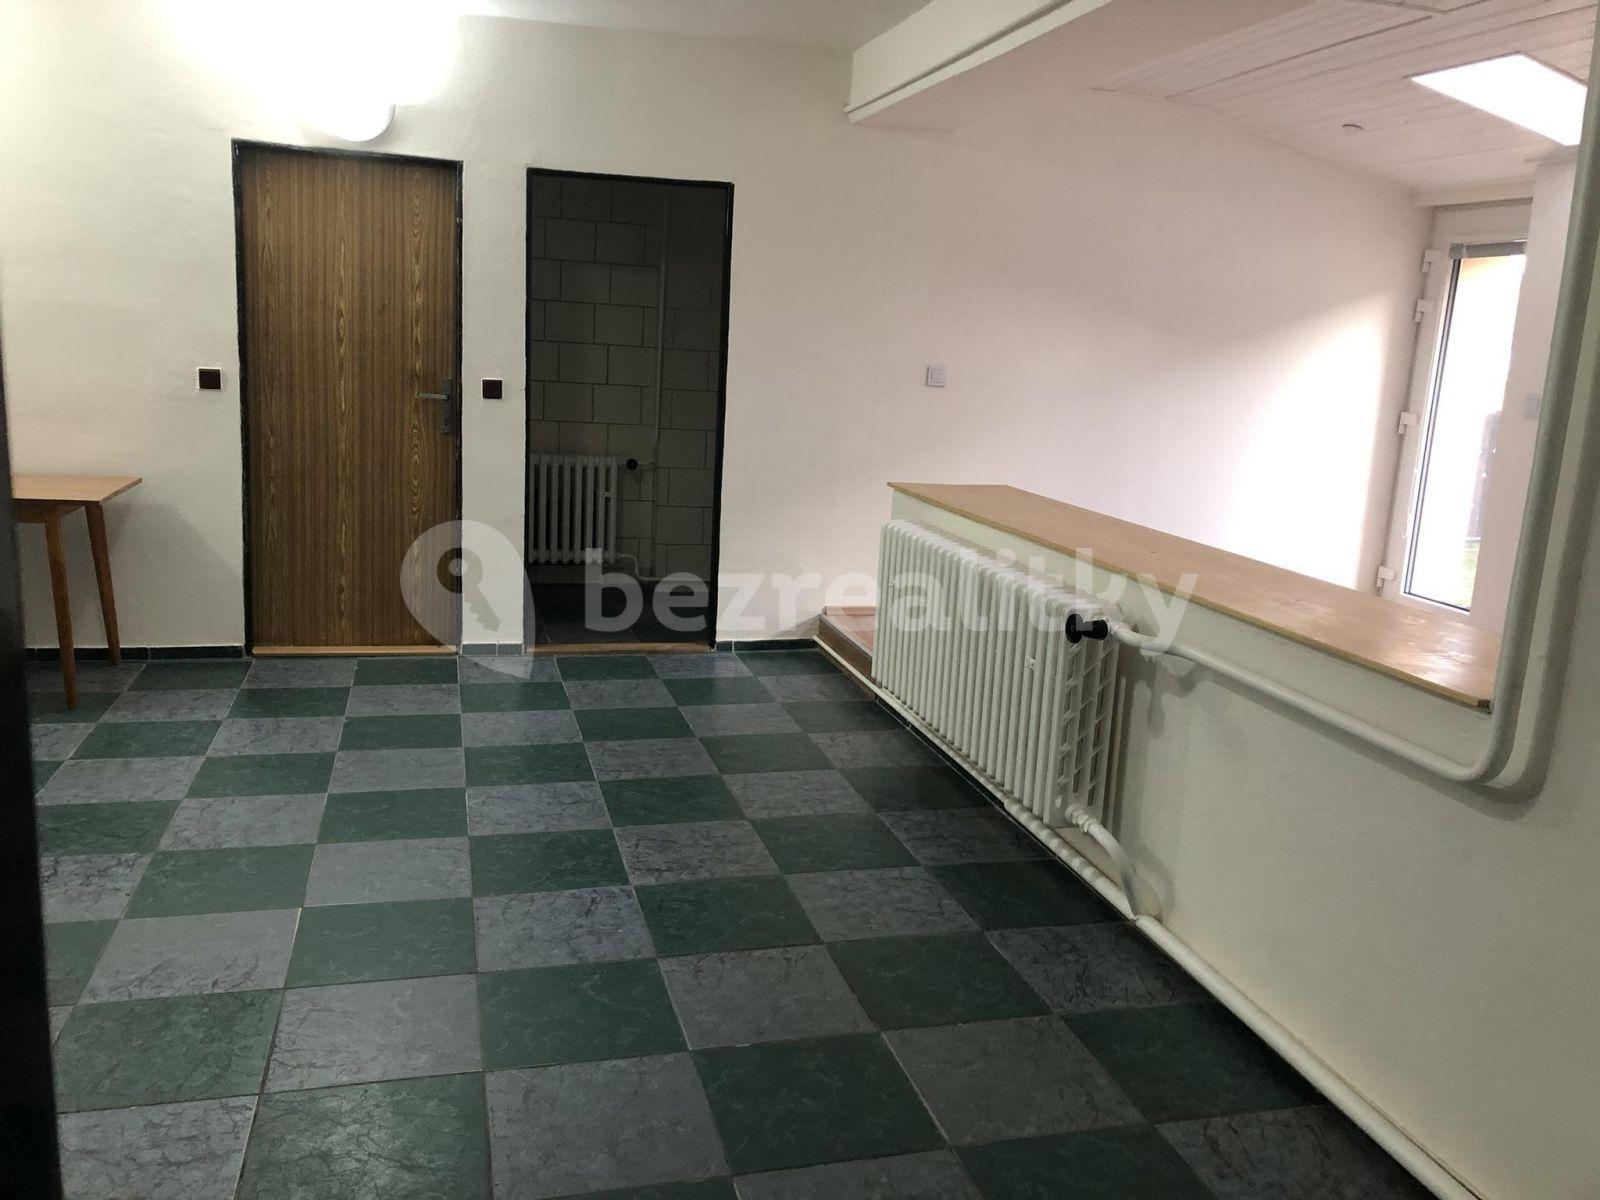 2 bedroom flat to rent, 70 m², Koleč, Středočeský Region